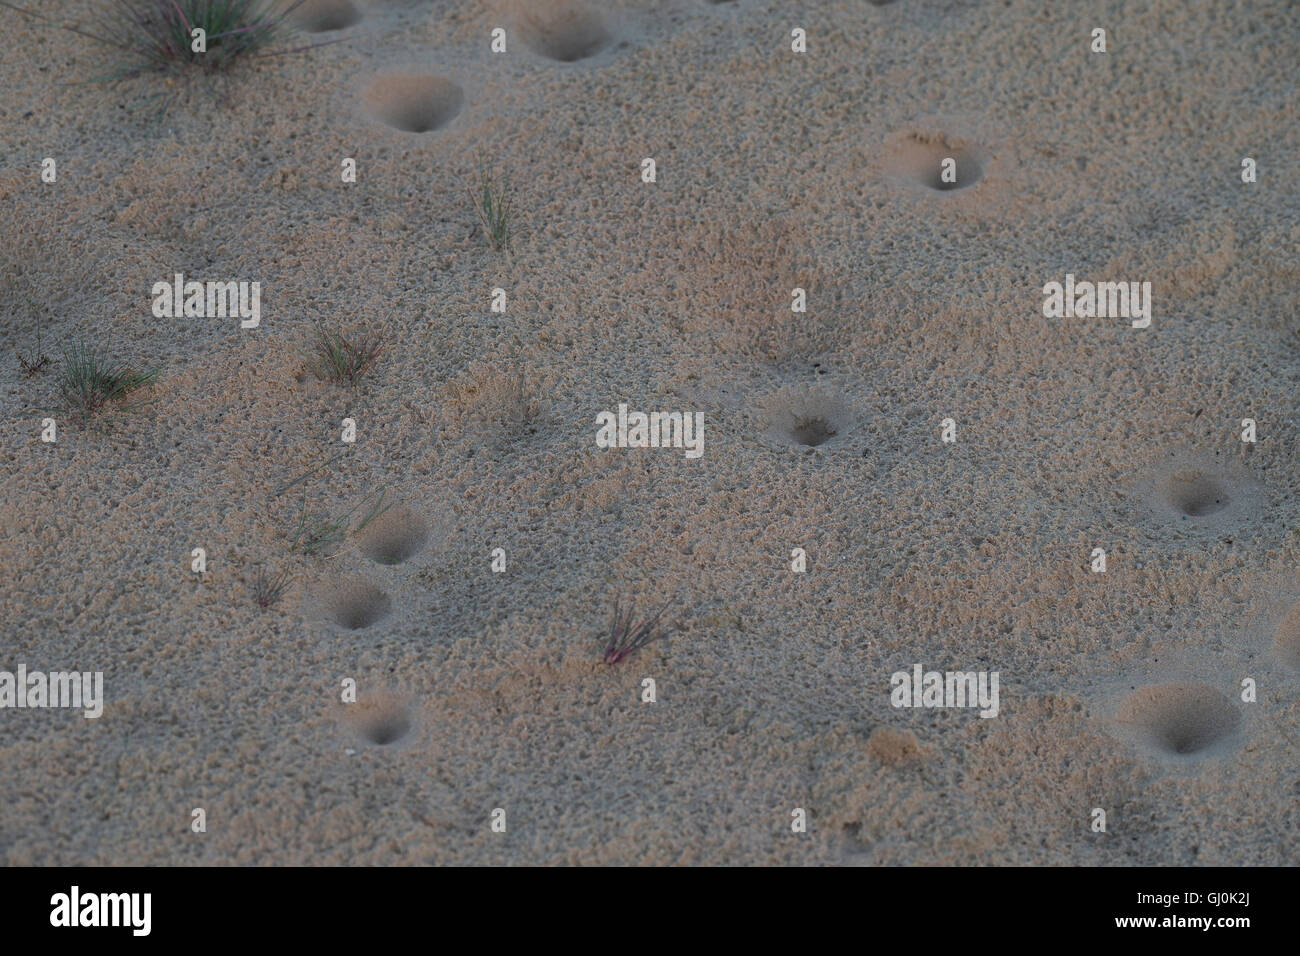 Ameisenlöwe, Ameisenlöwen, Ameisen-Löwe, Ameisenjungfer, Myrmeleontidae, Fangtrichter im Sand einer Binnendüne, Larve, Larven, a Stock Photo